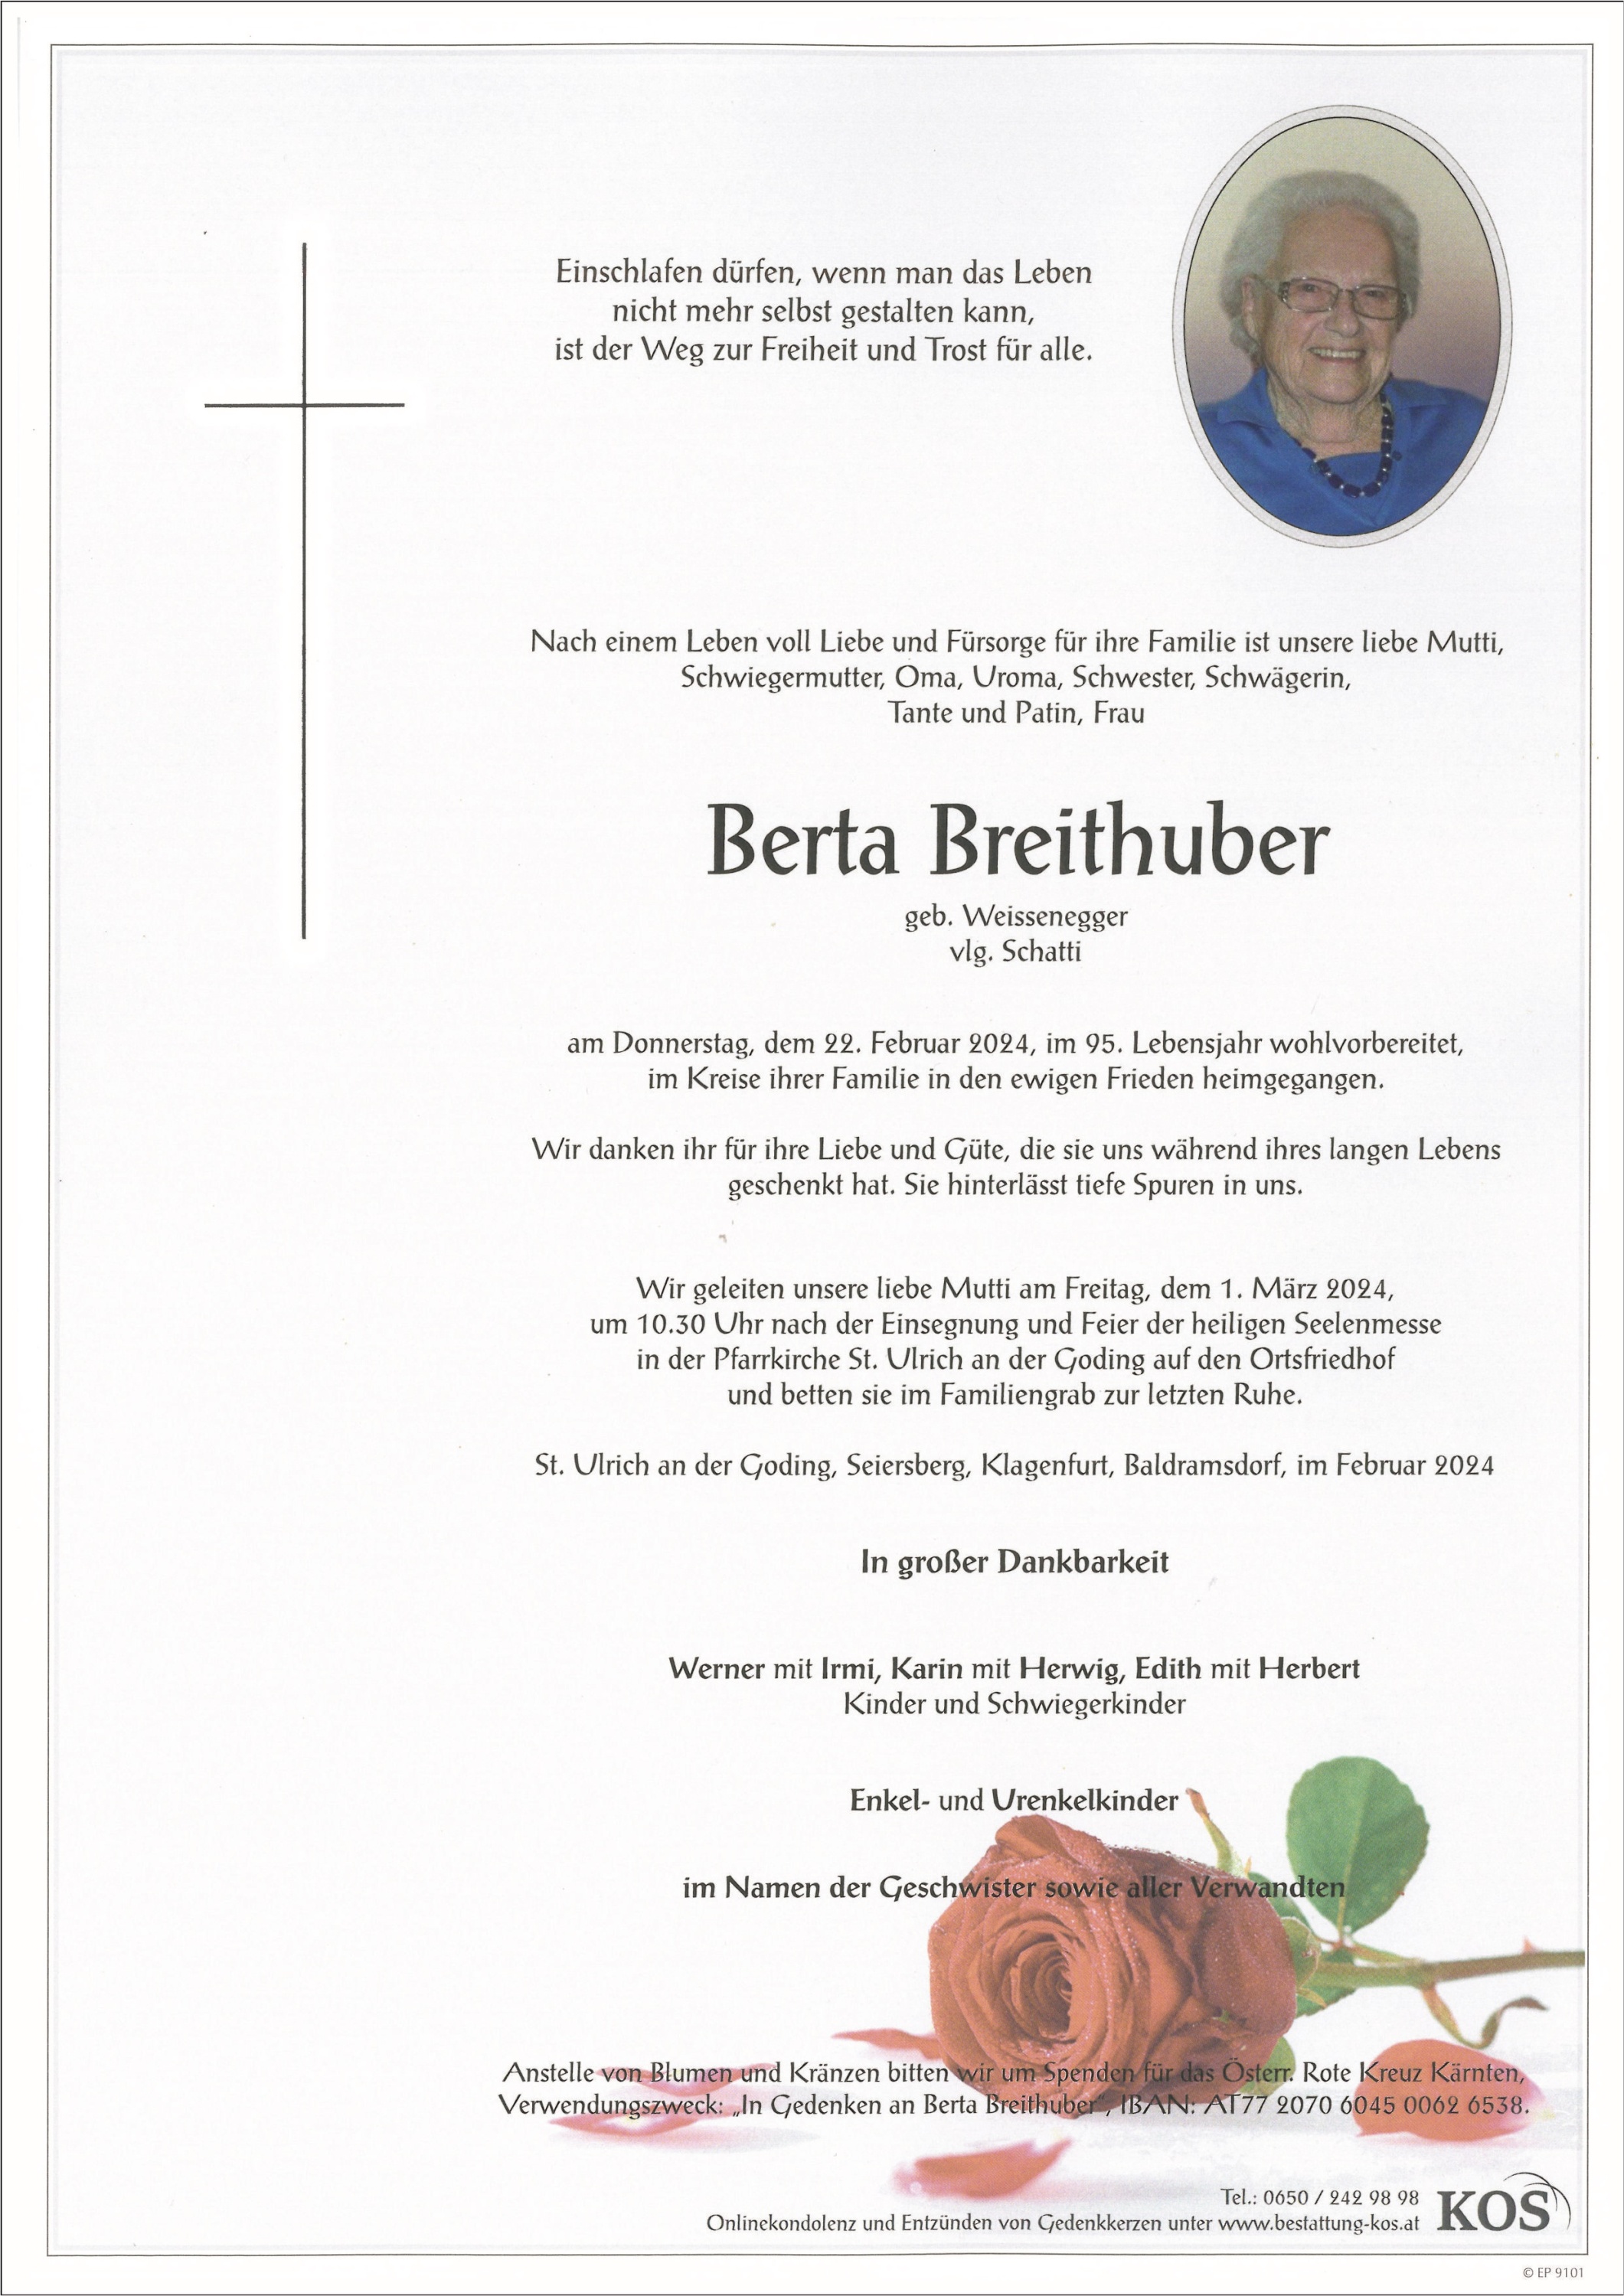 Berta Breithuber